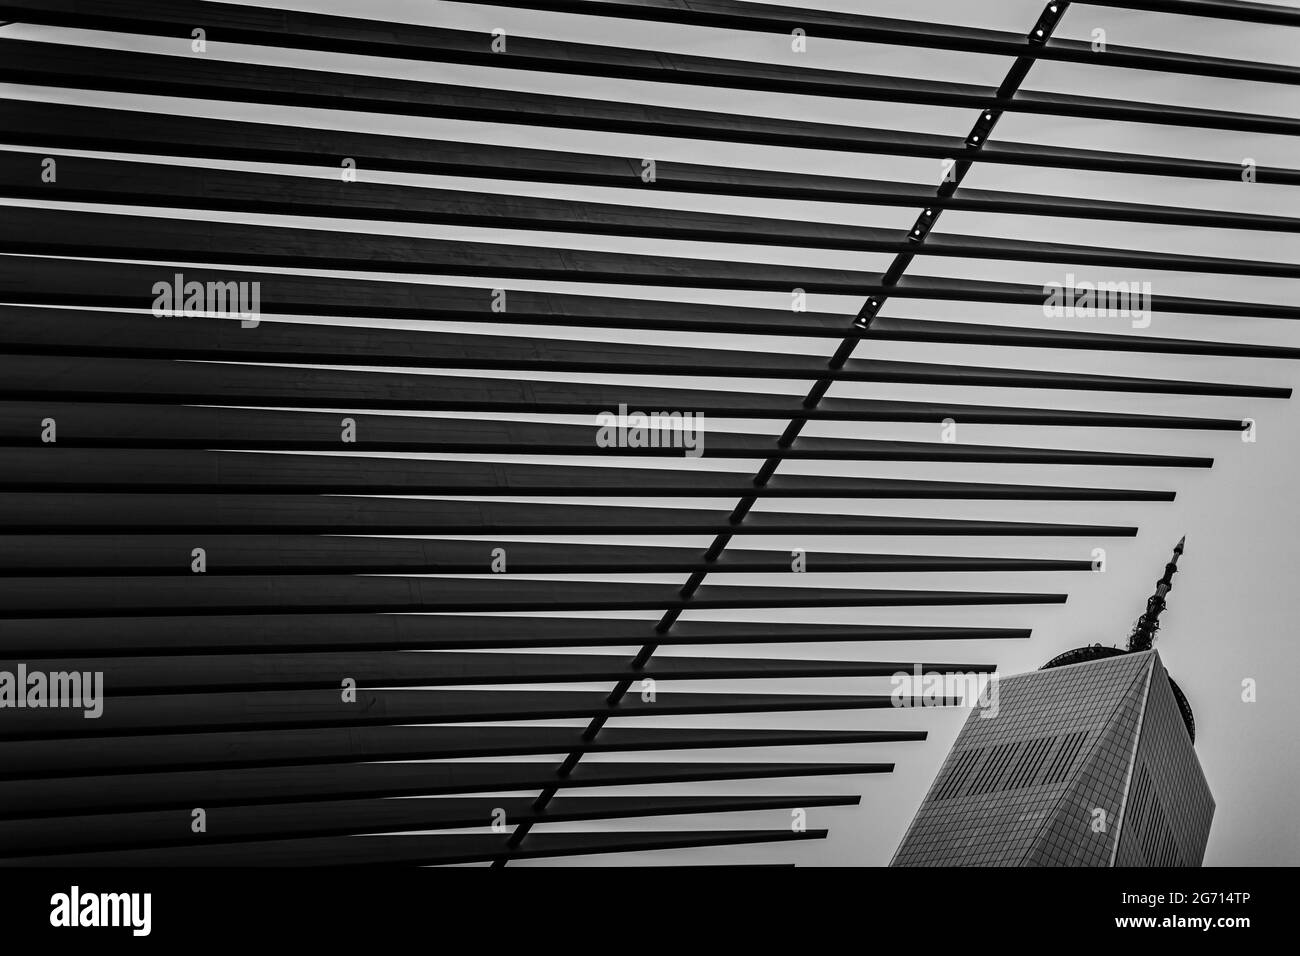 New York, USA. 09. Juli 2021. Während des New York City ePrix 2021, 6. Treffen der Formel-E-Weltmeisterschaft 2020-21, auf dem Brooklyn Street Circuit vom 10. Bis 11. Juli in New York, USA - Foto Francois Flamand / DPPI Credit: Independent Photo Agency/Alamy Live News Stockfoto